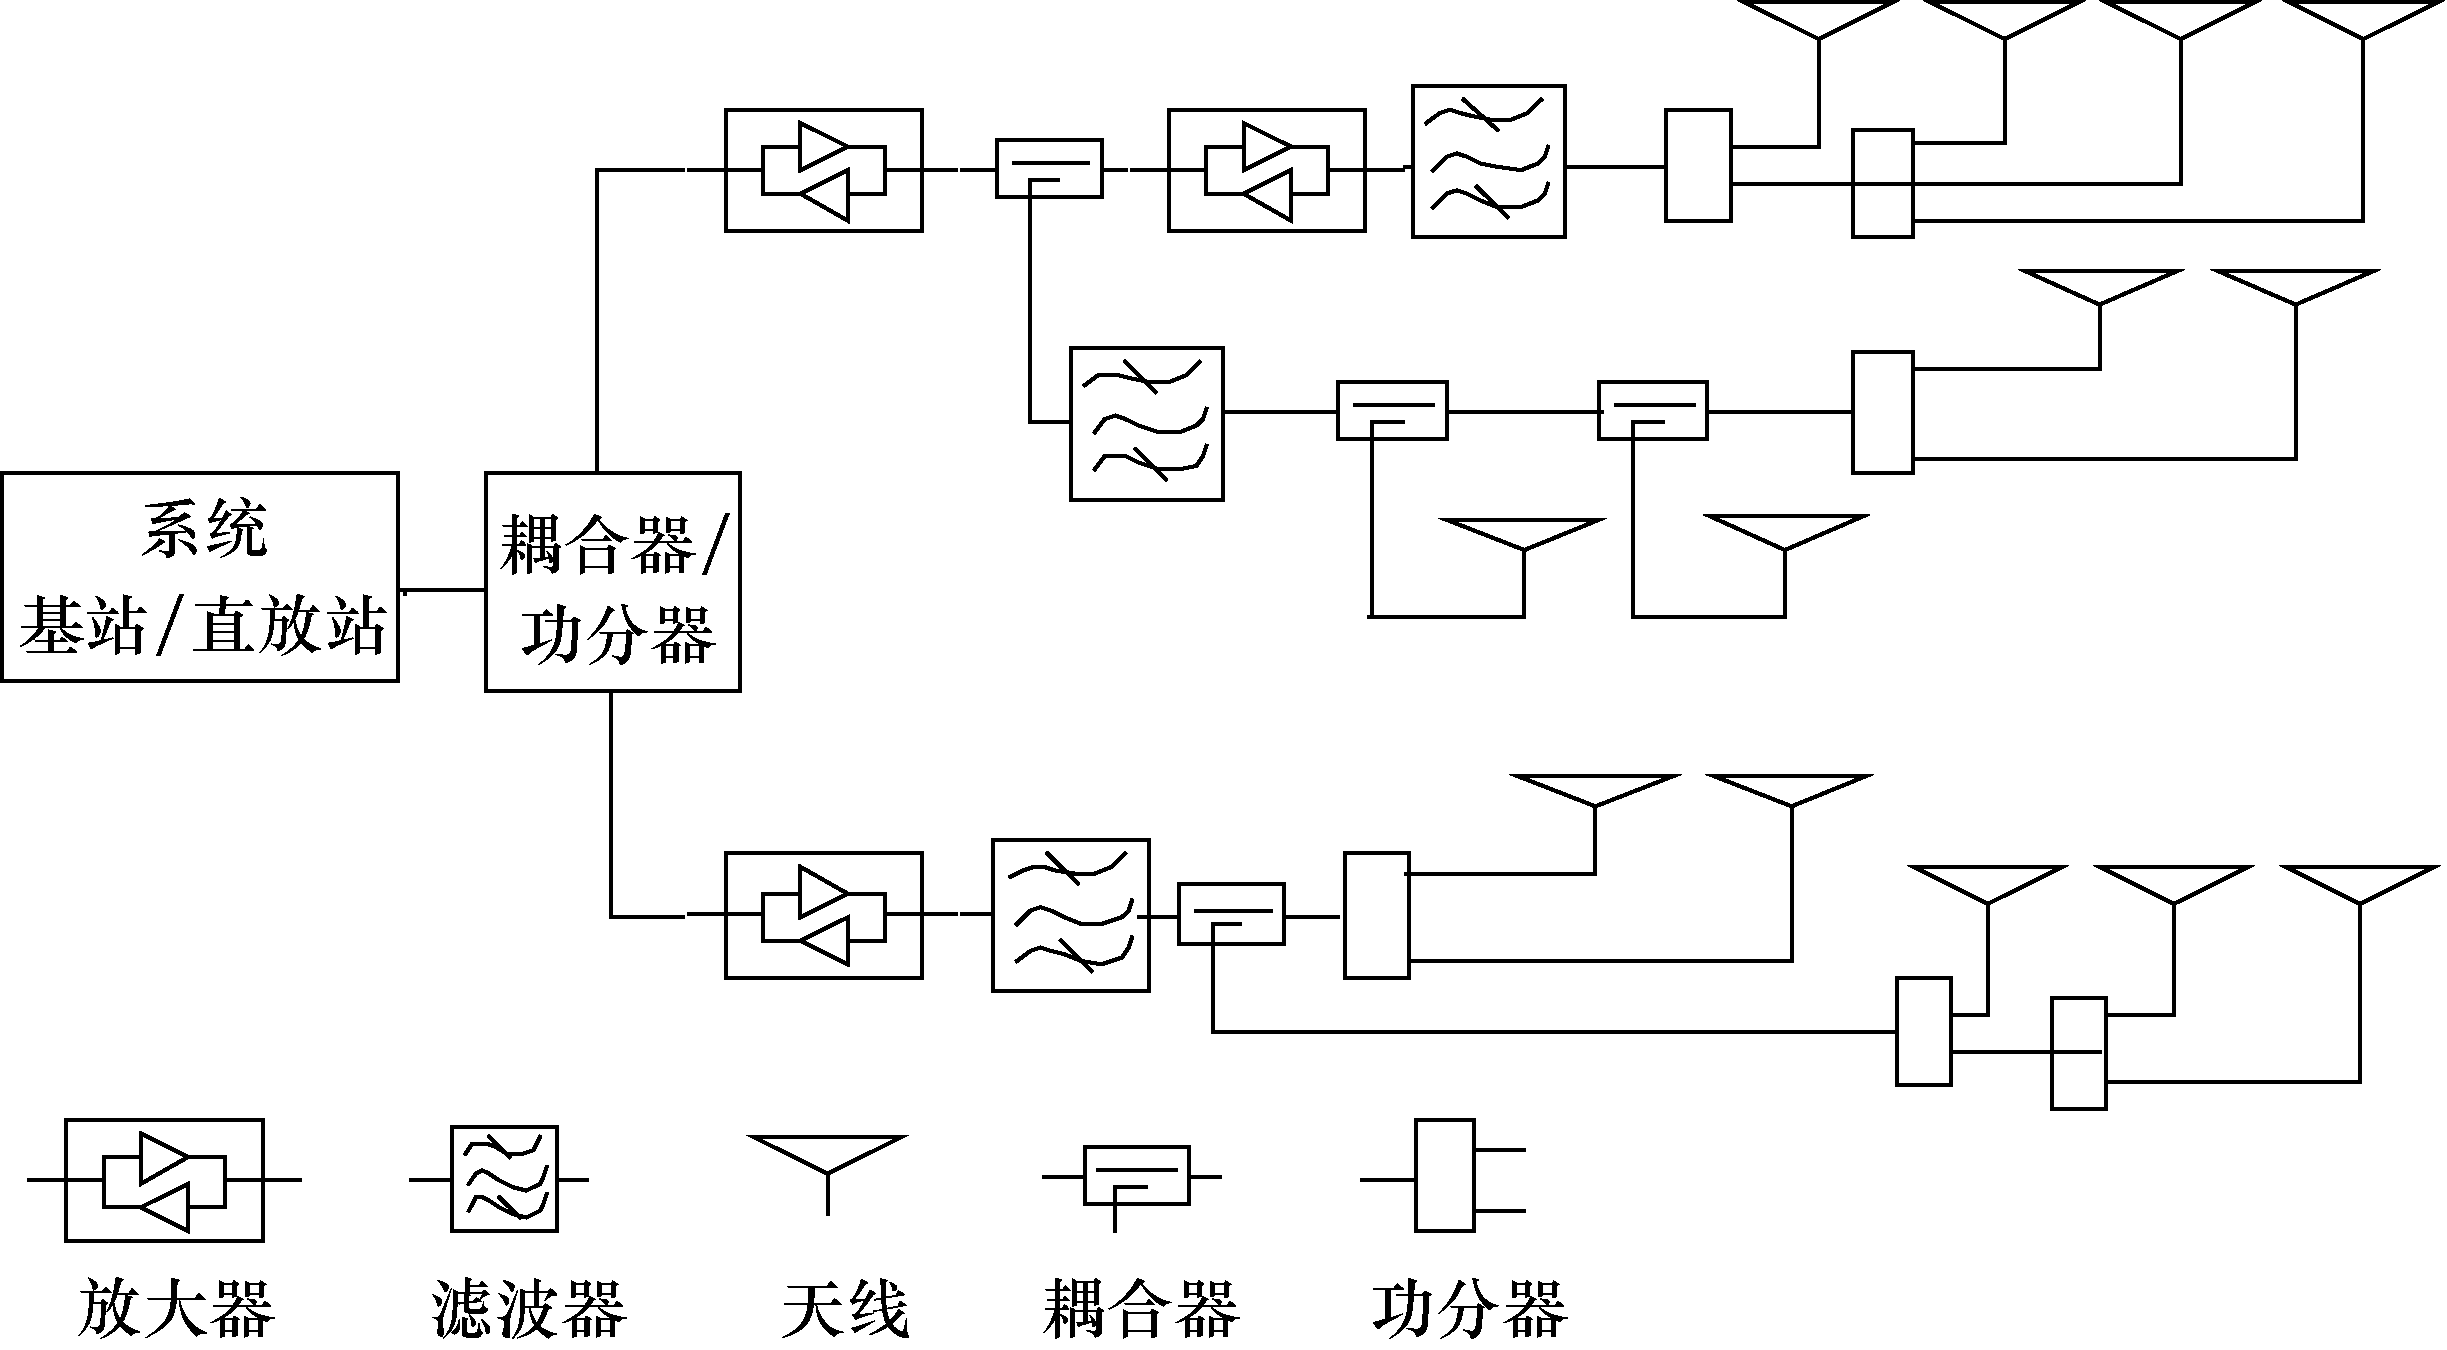 圖10-29  有源分布系統示意圖